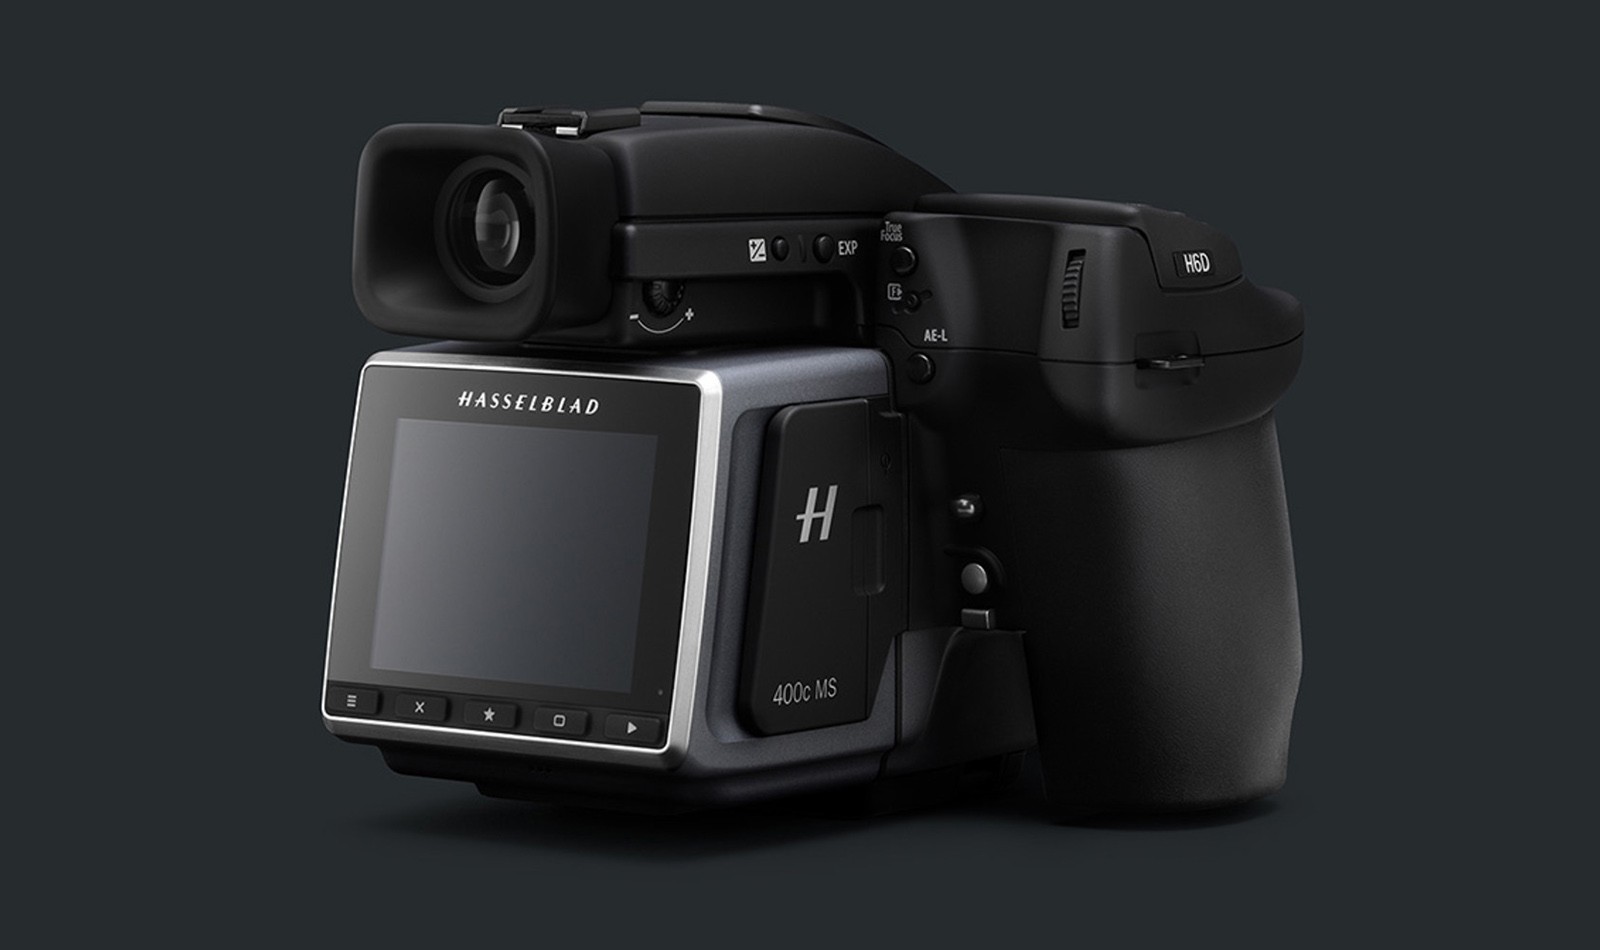 Nowy Hasselblad H6D-400c rejestruje zdjęcia o rozdzielczości 400 megapikseli